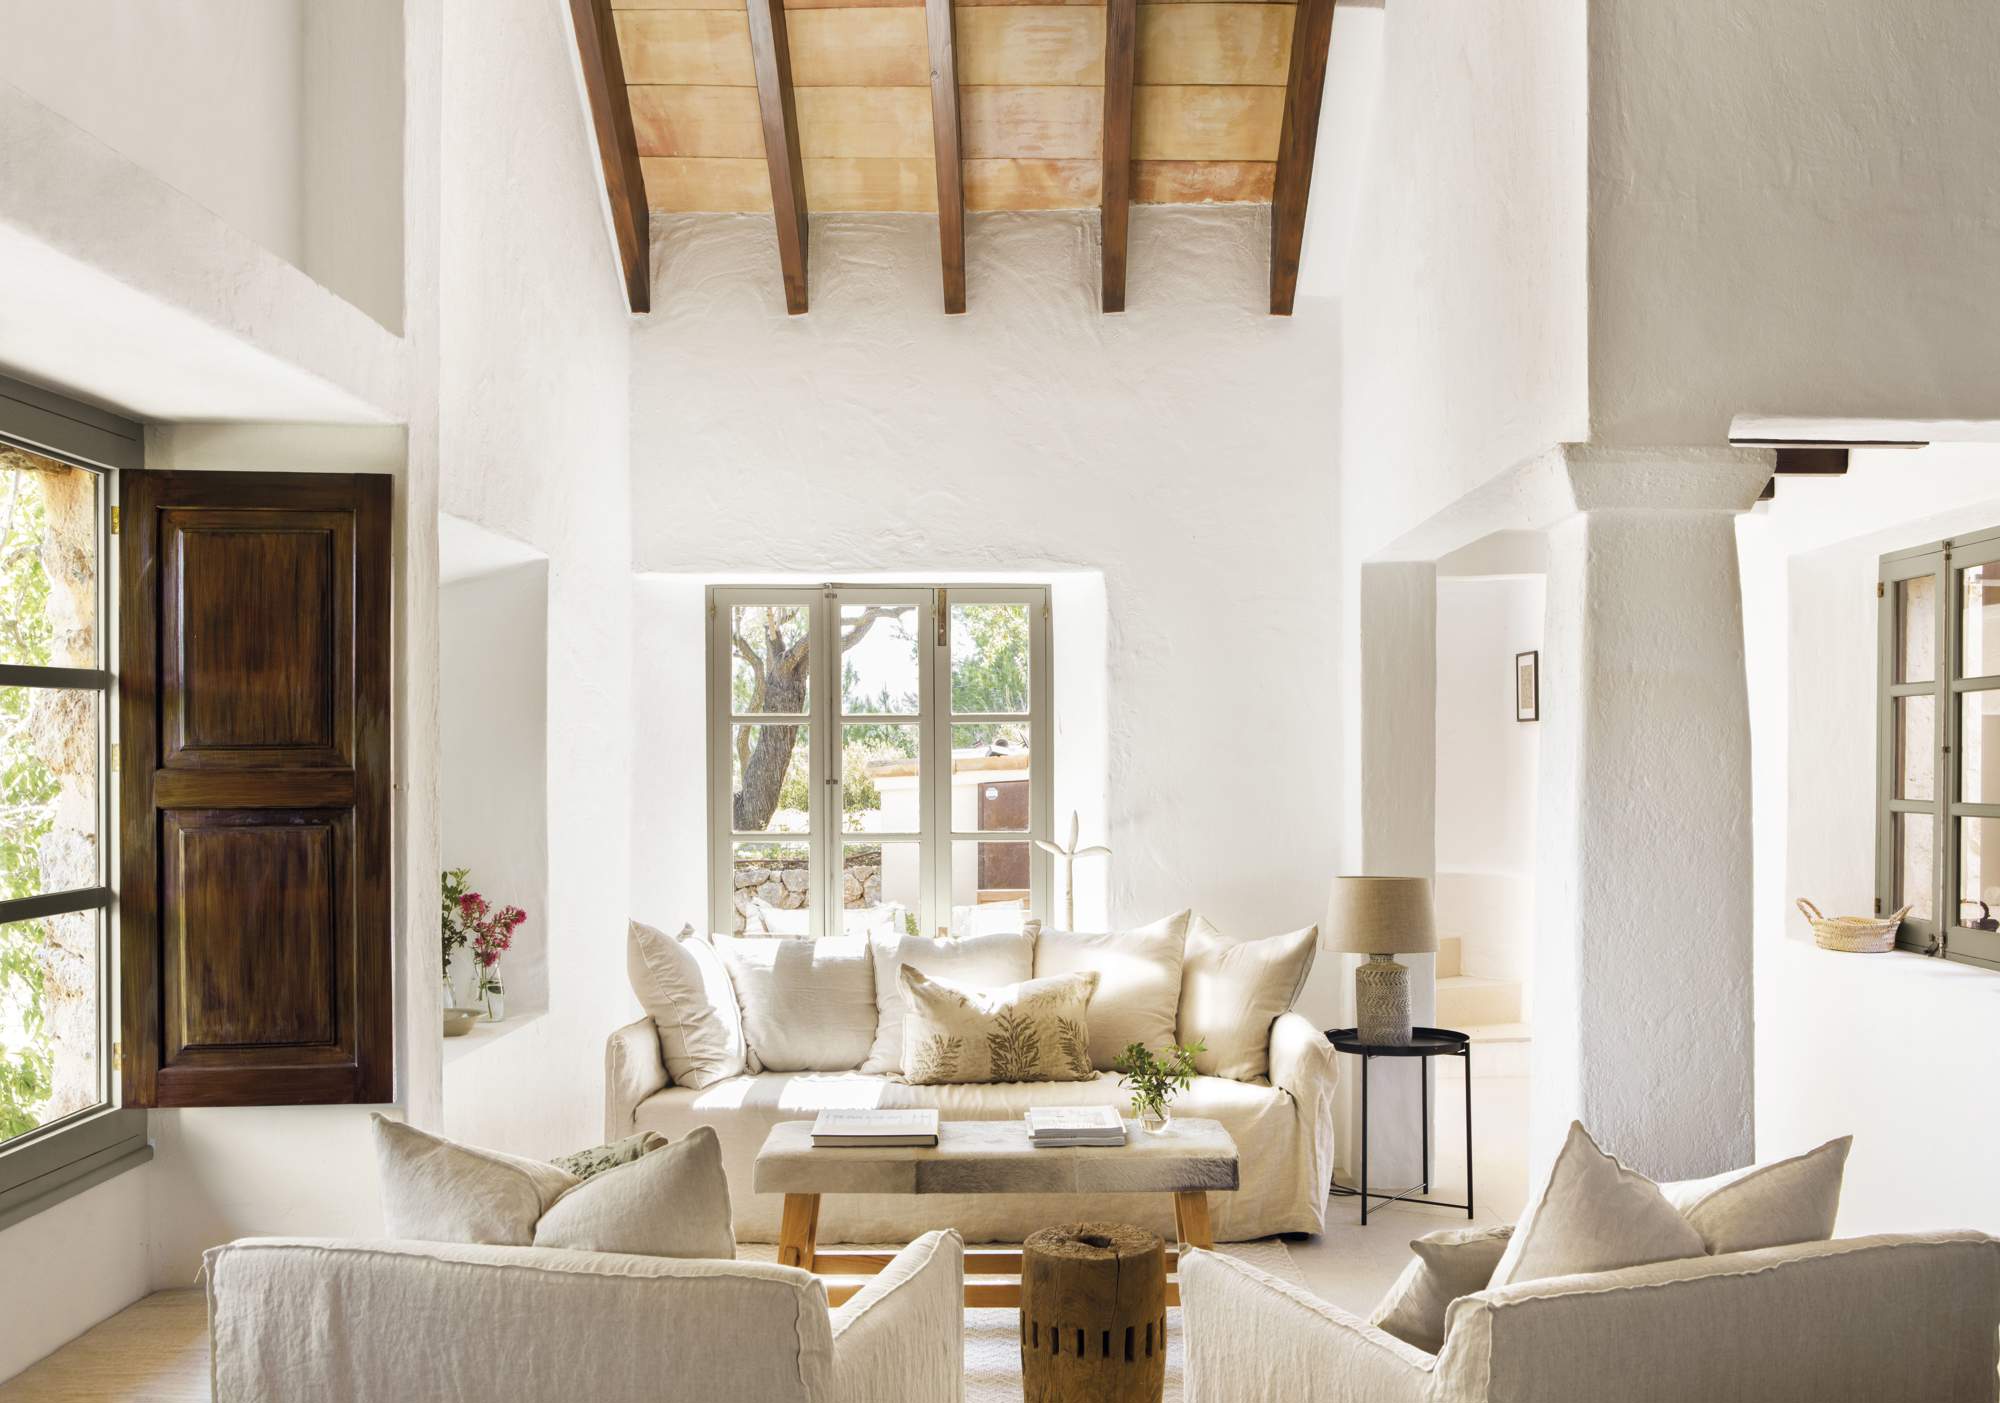 Salón con sofá de color blanco, dos butacas y ventana de madera.